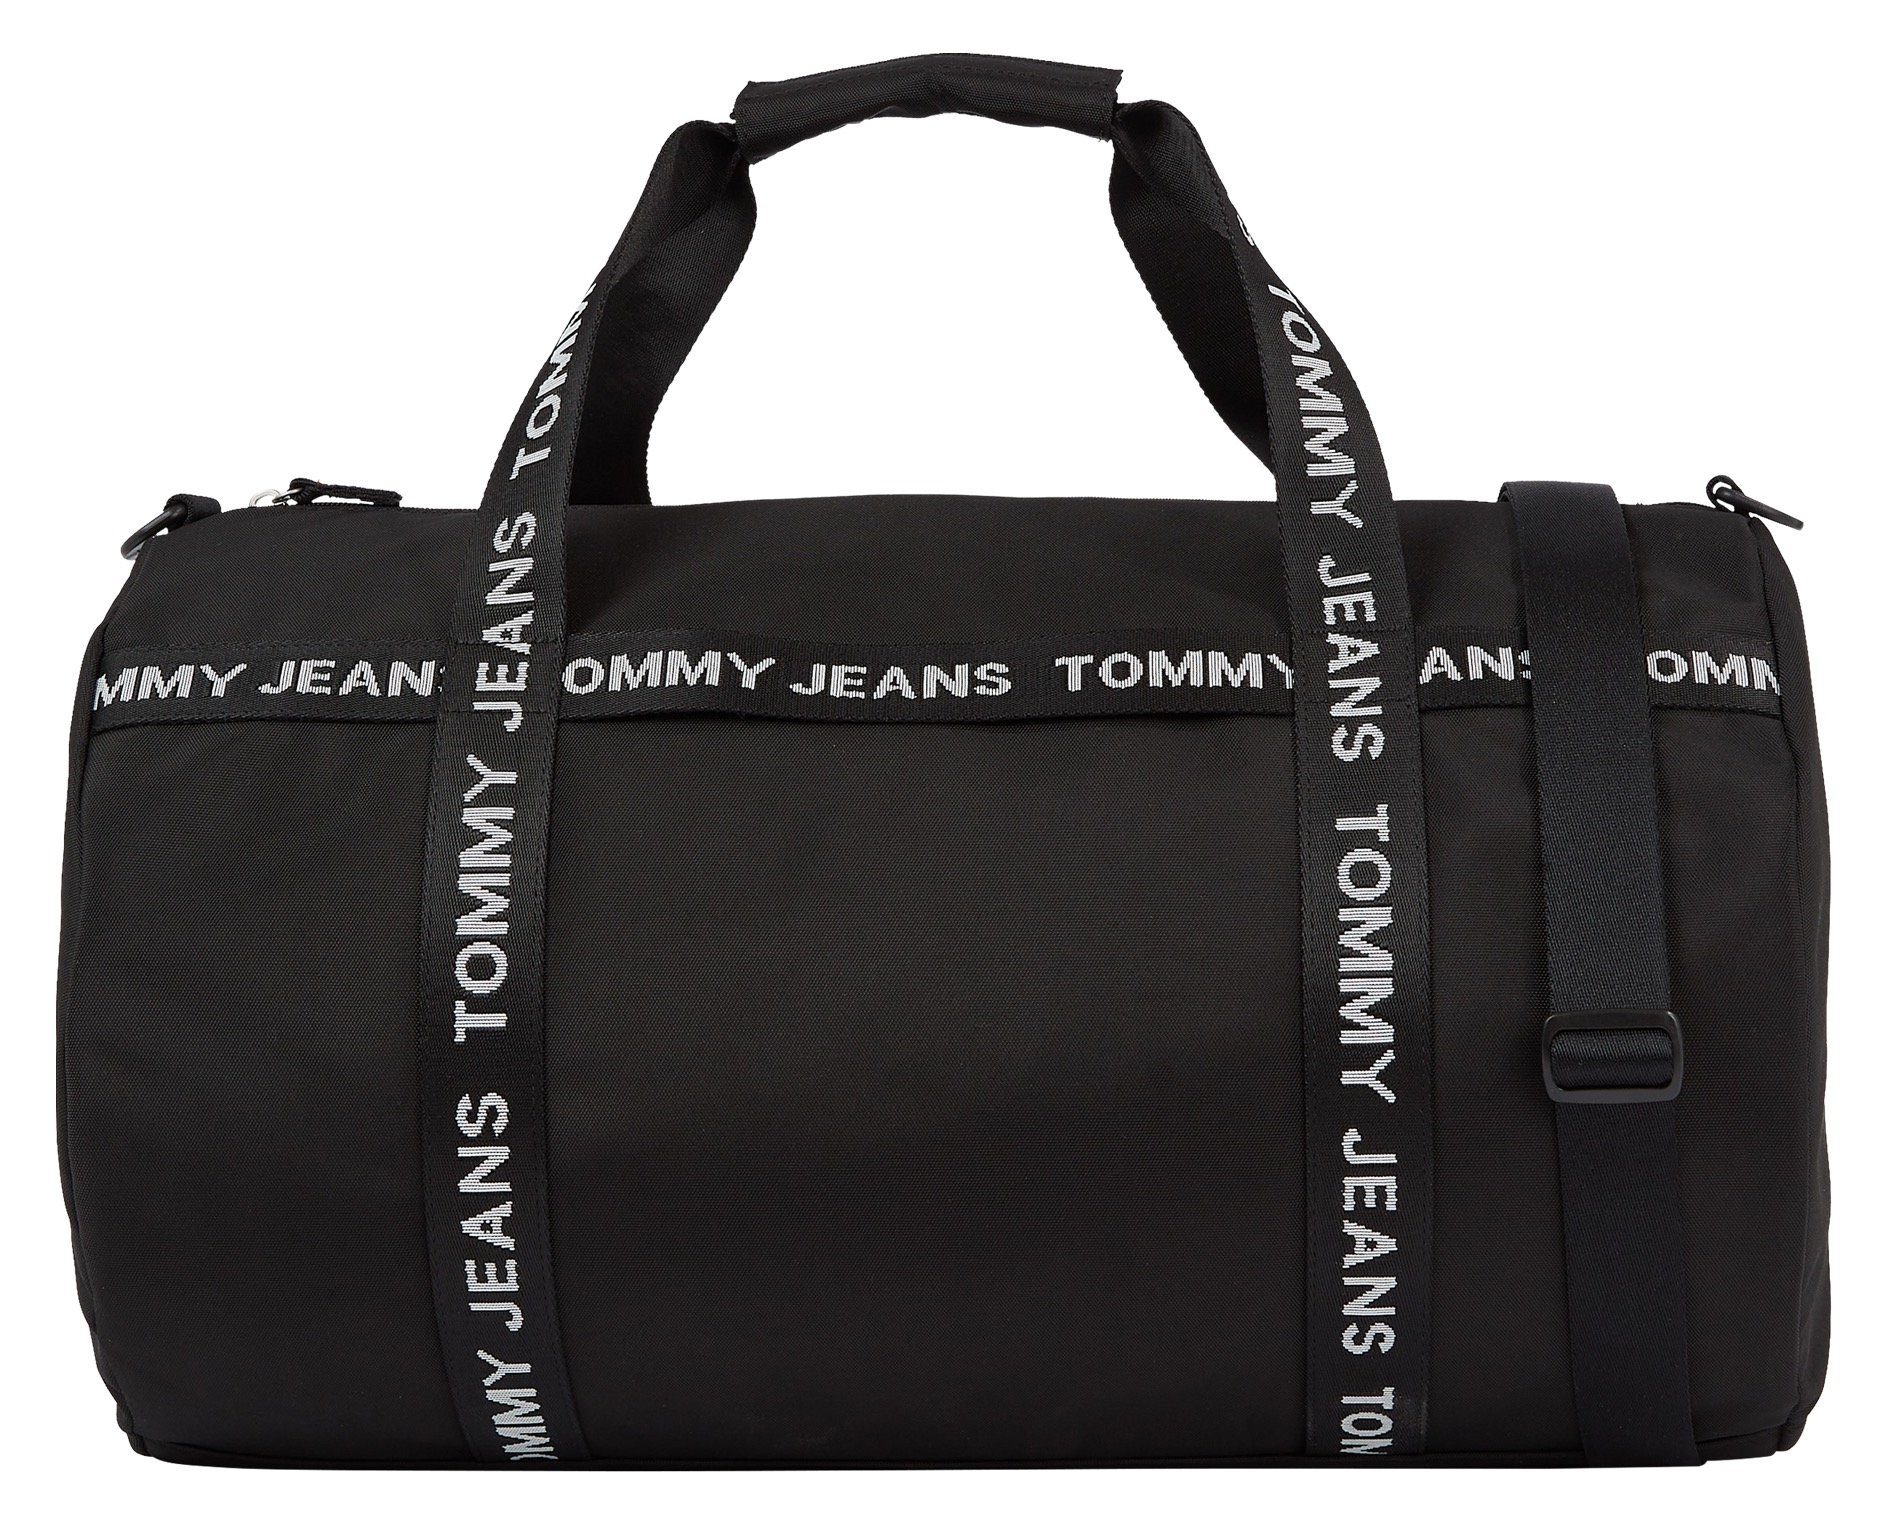 Tommy Jeans Weekender TJM ESSENTIAL schwarz geräumigem DUFFLE, Hauptfach mit